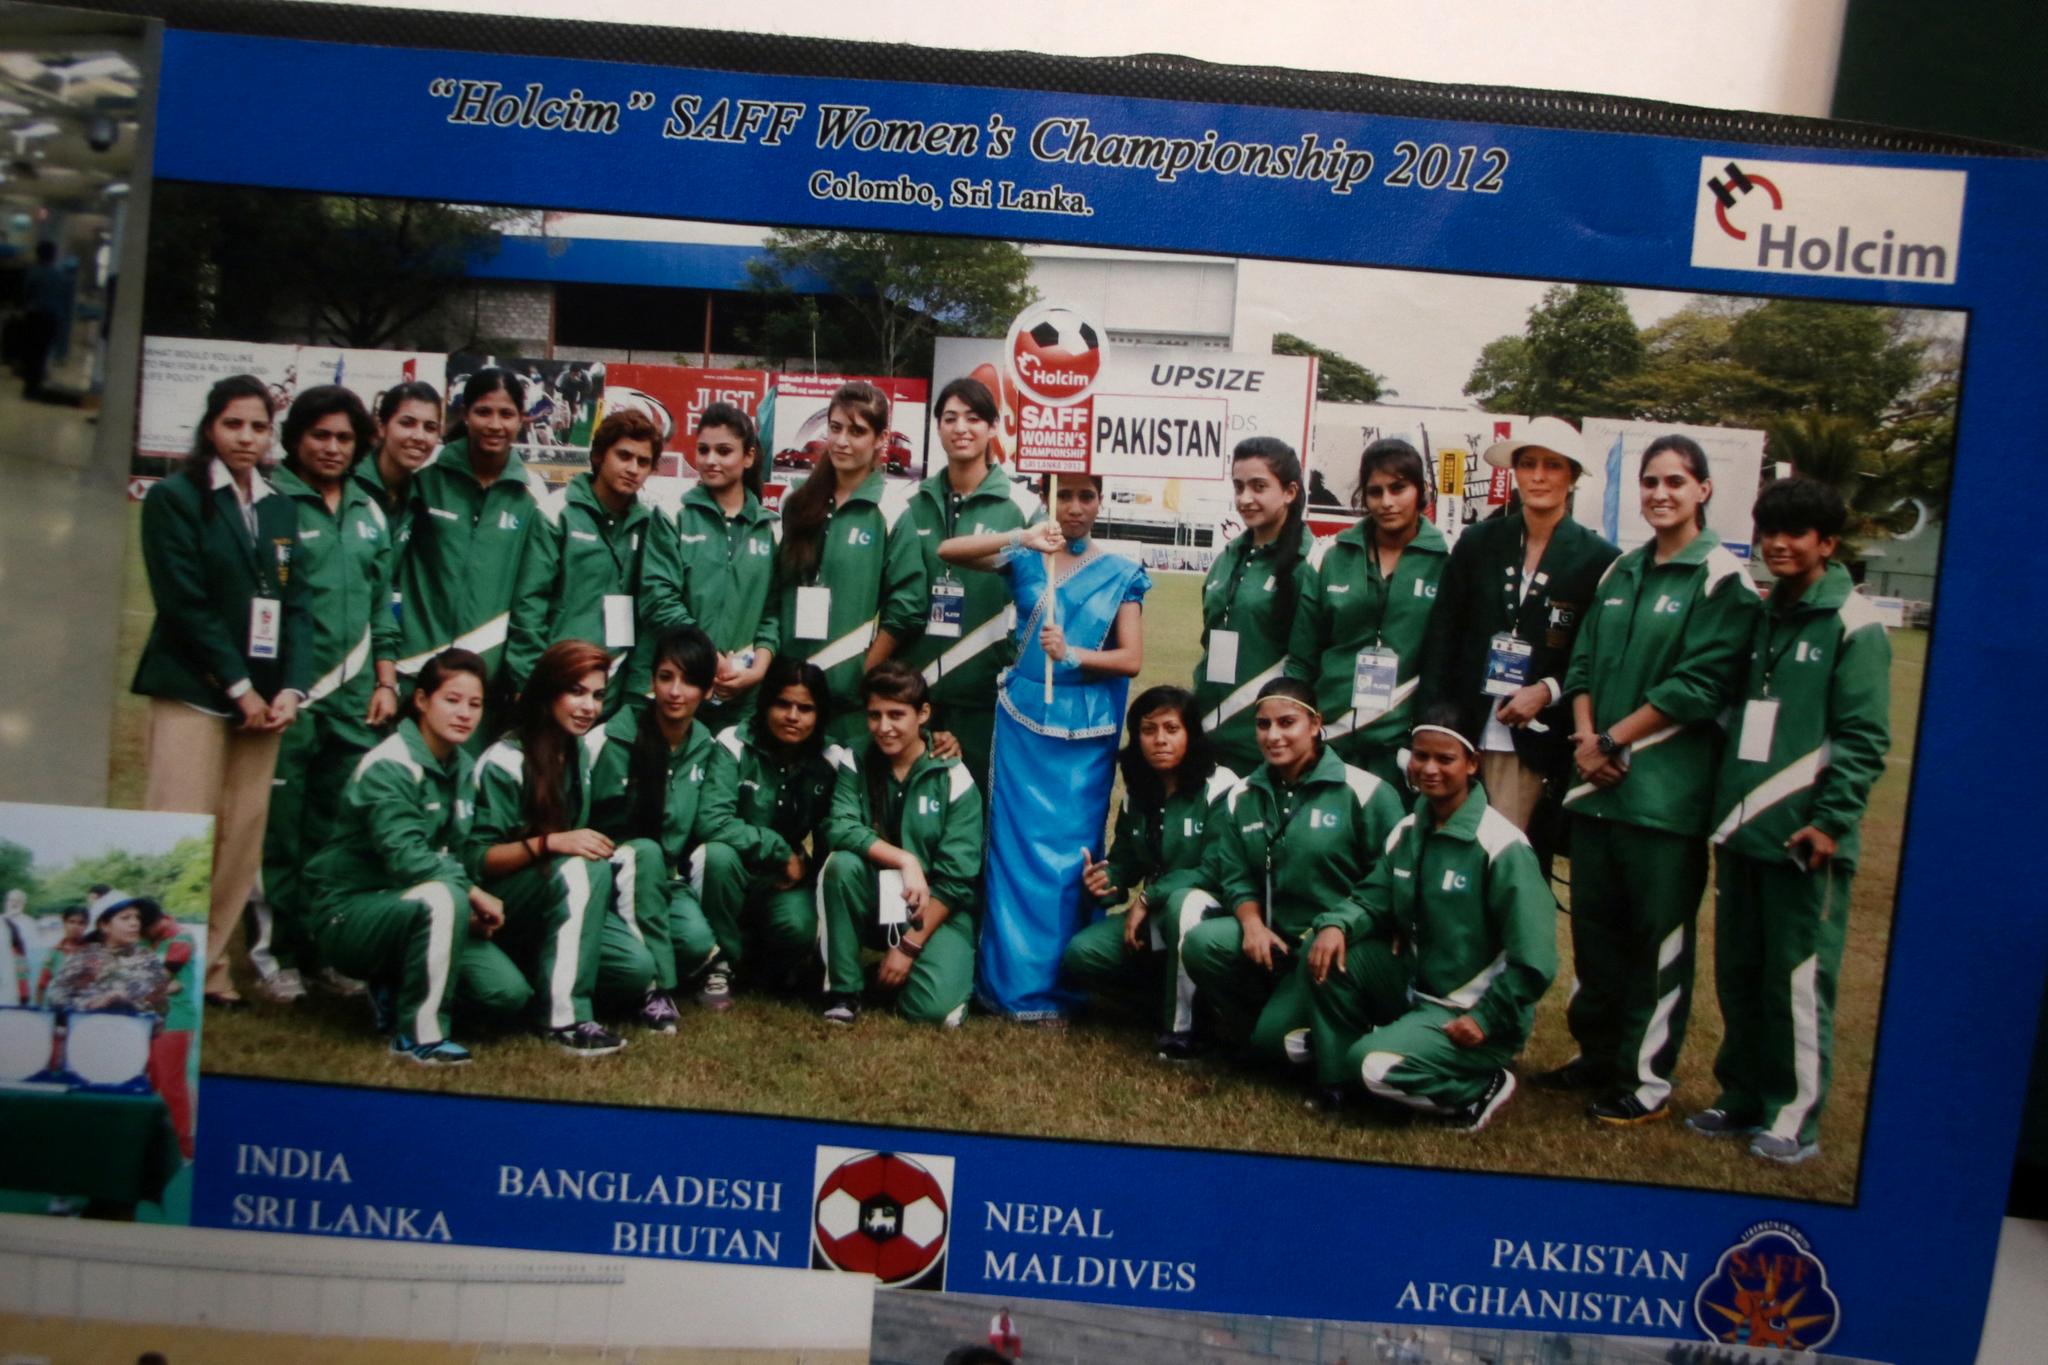 På dette gruppebildet av det pakistanske fotballandslaget kan man se Shahida Raza helt til venstre i første rad. Hun omkom da hun var på vei til Italia for tre uker siden.